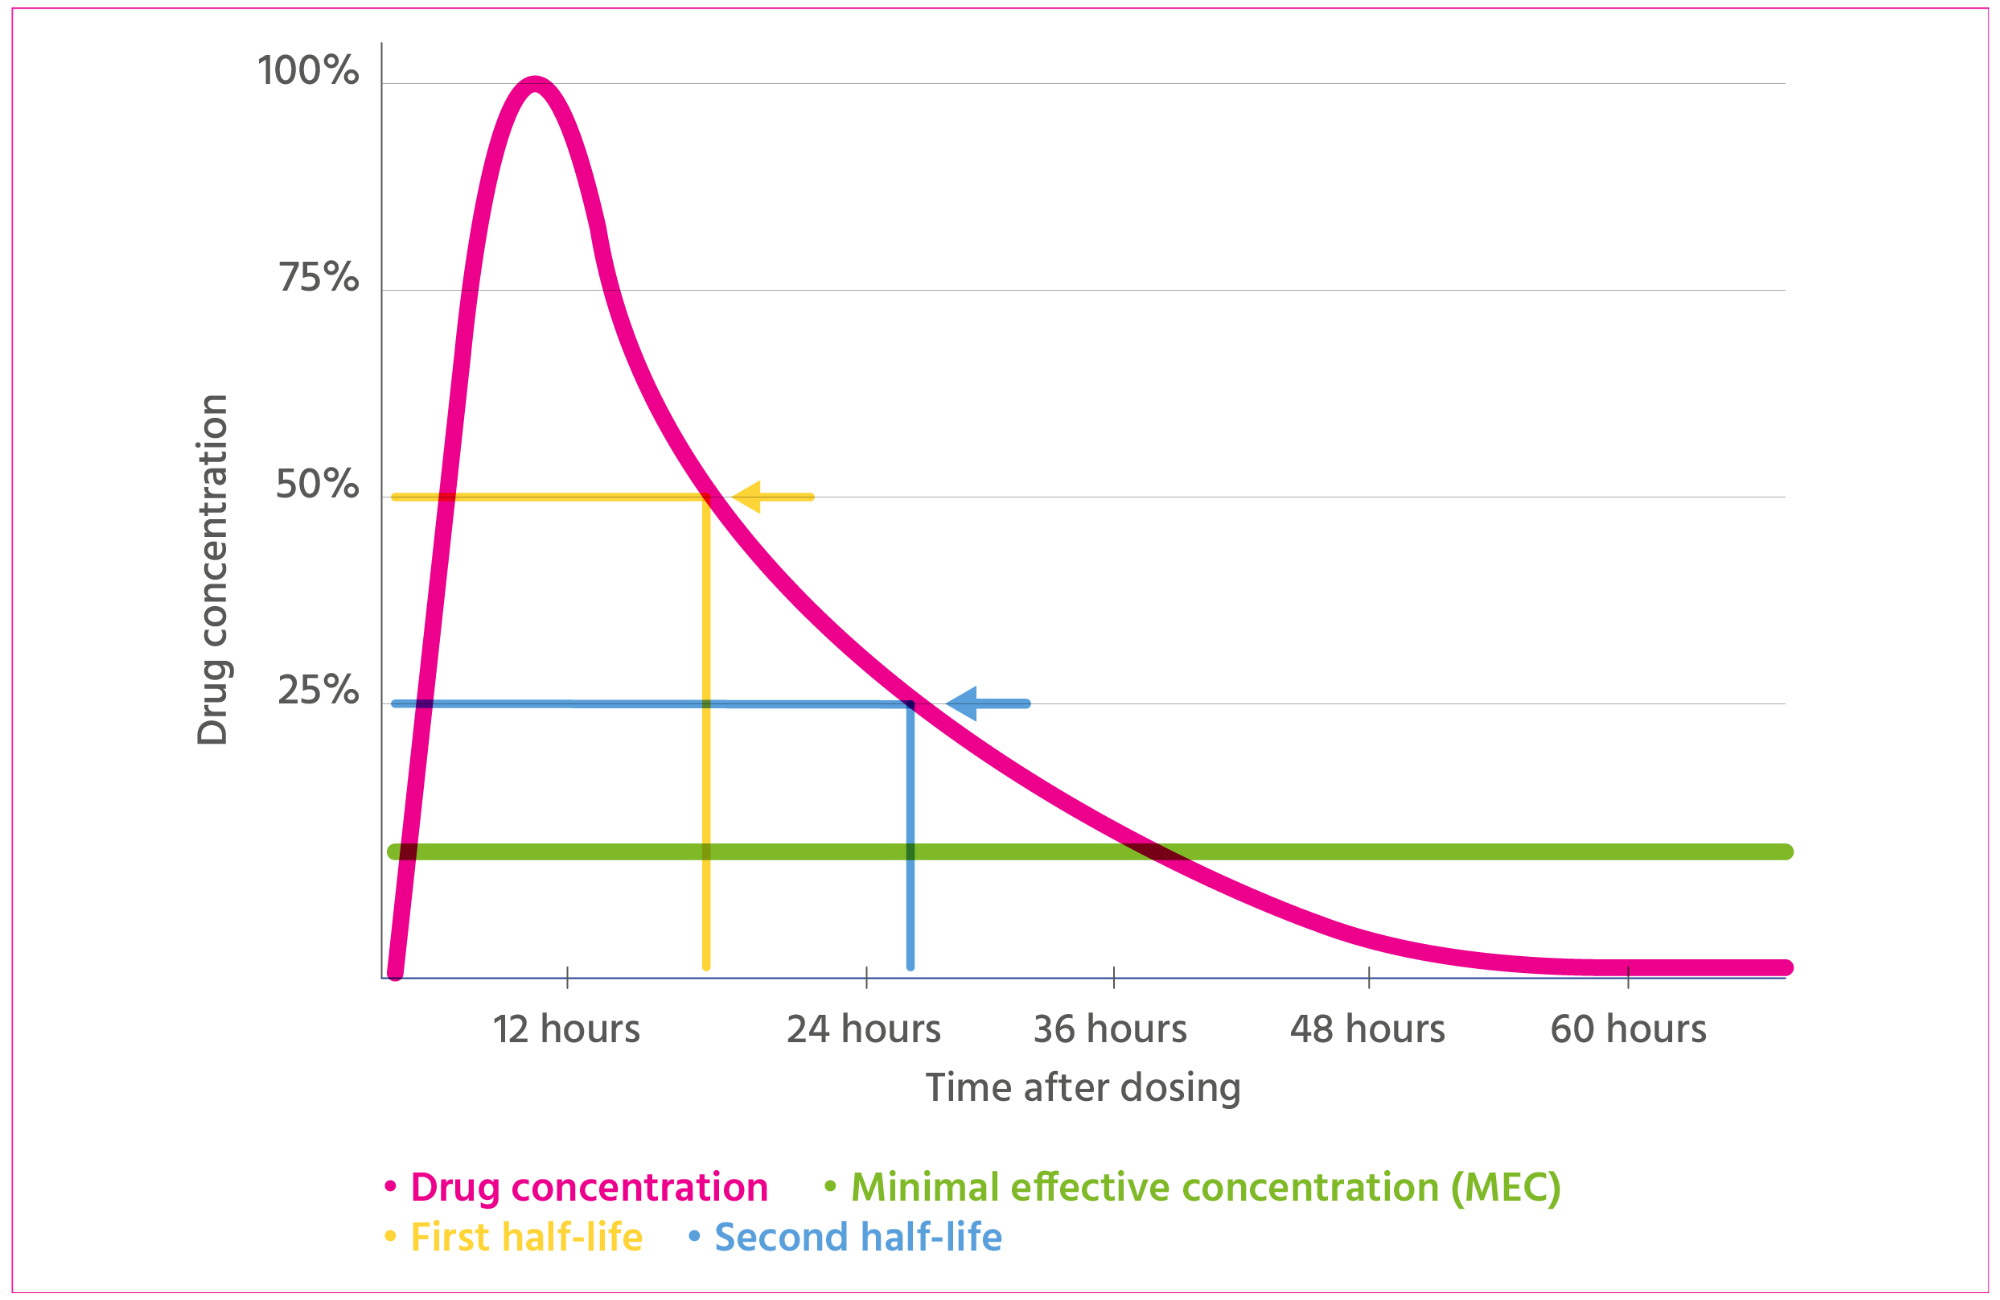 Drug concentration